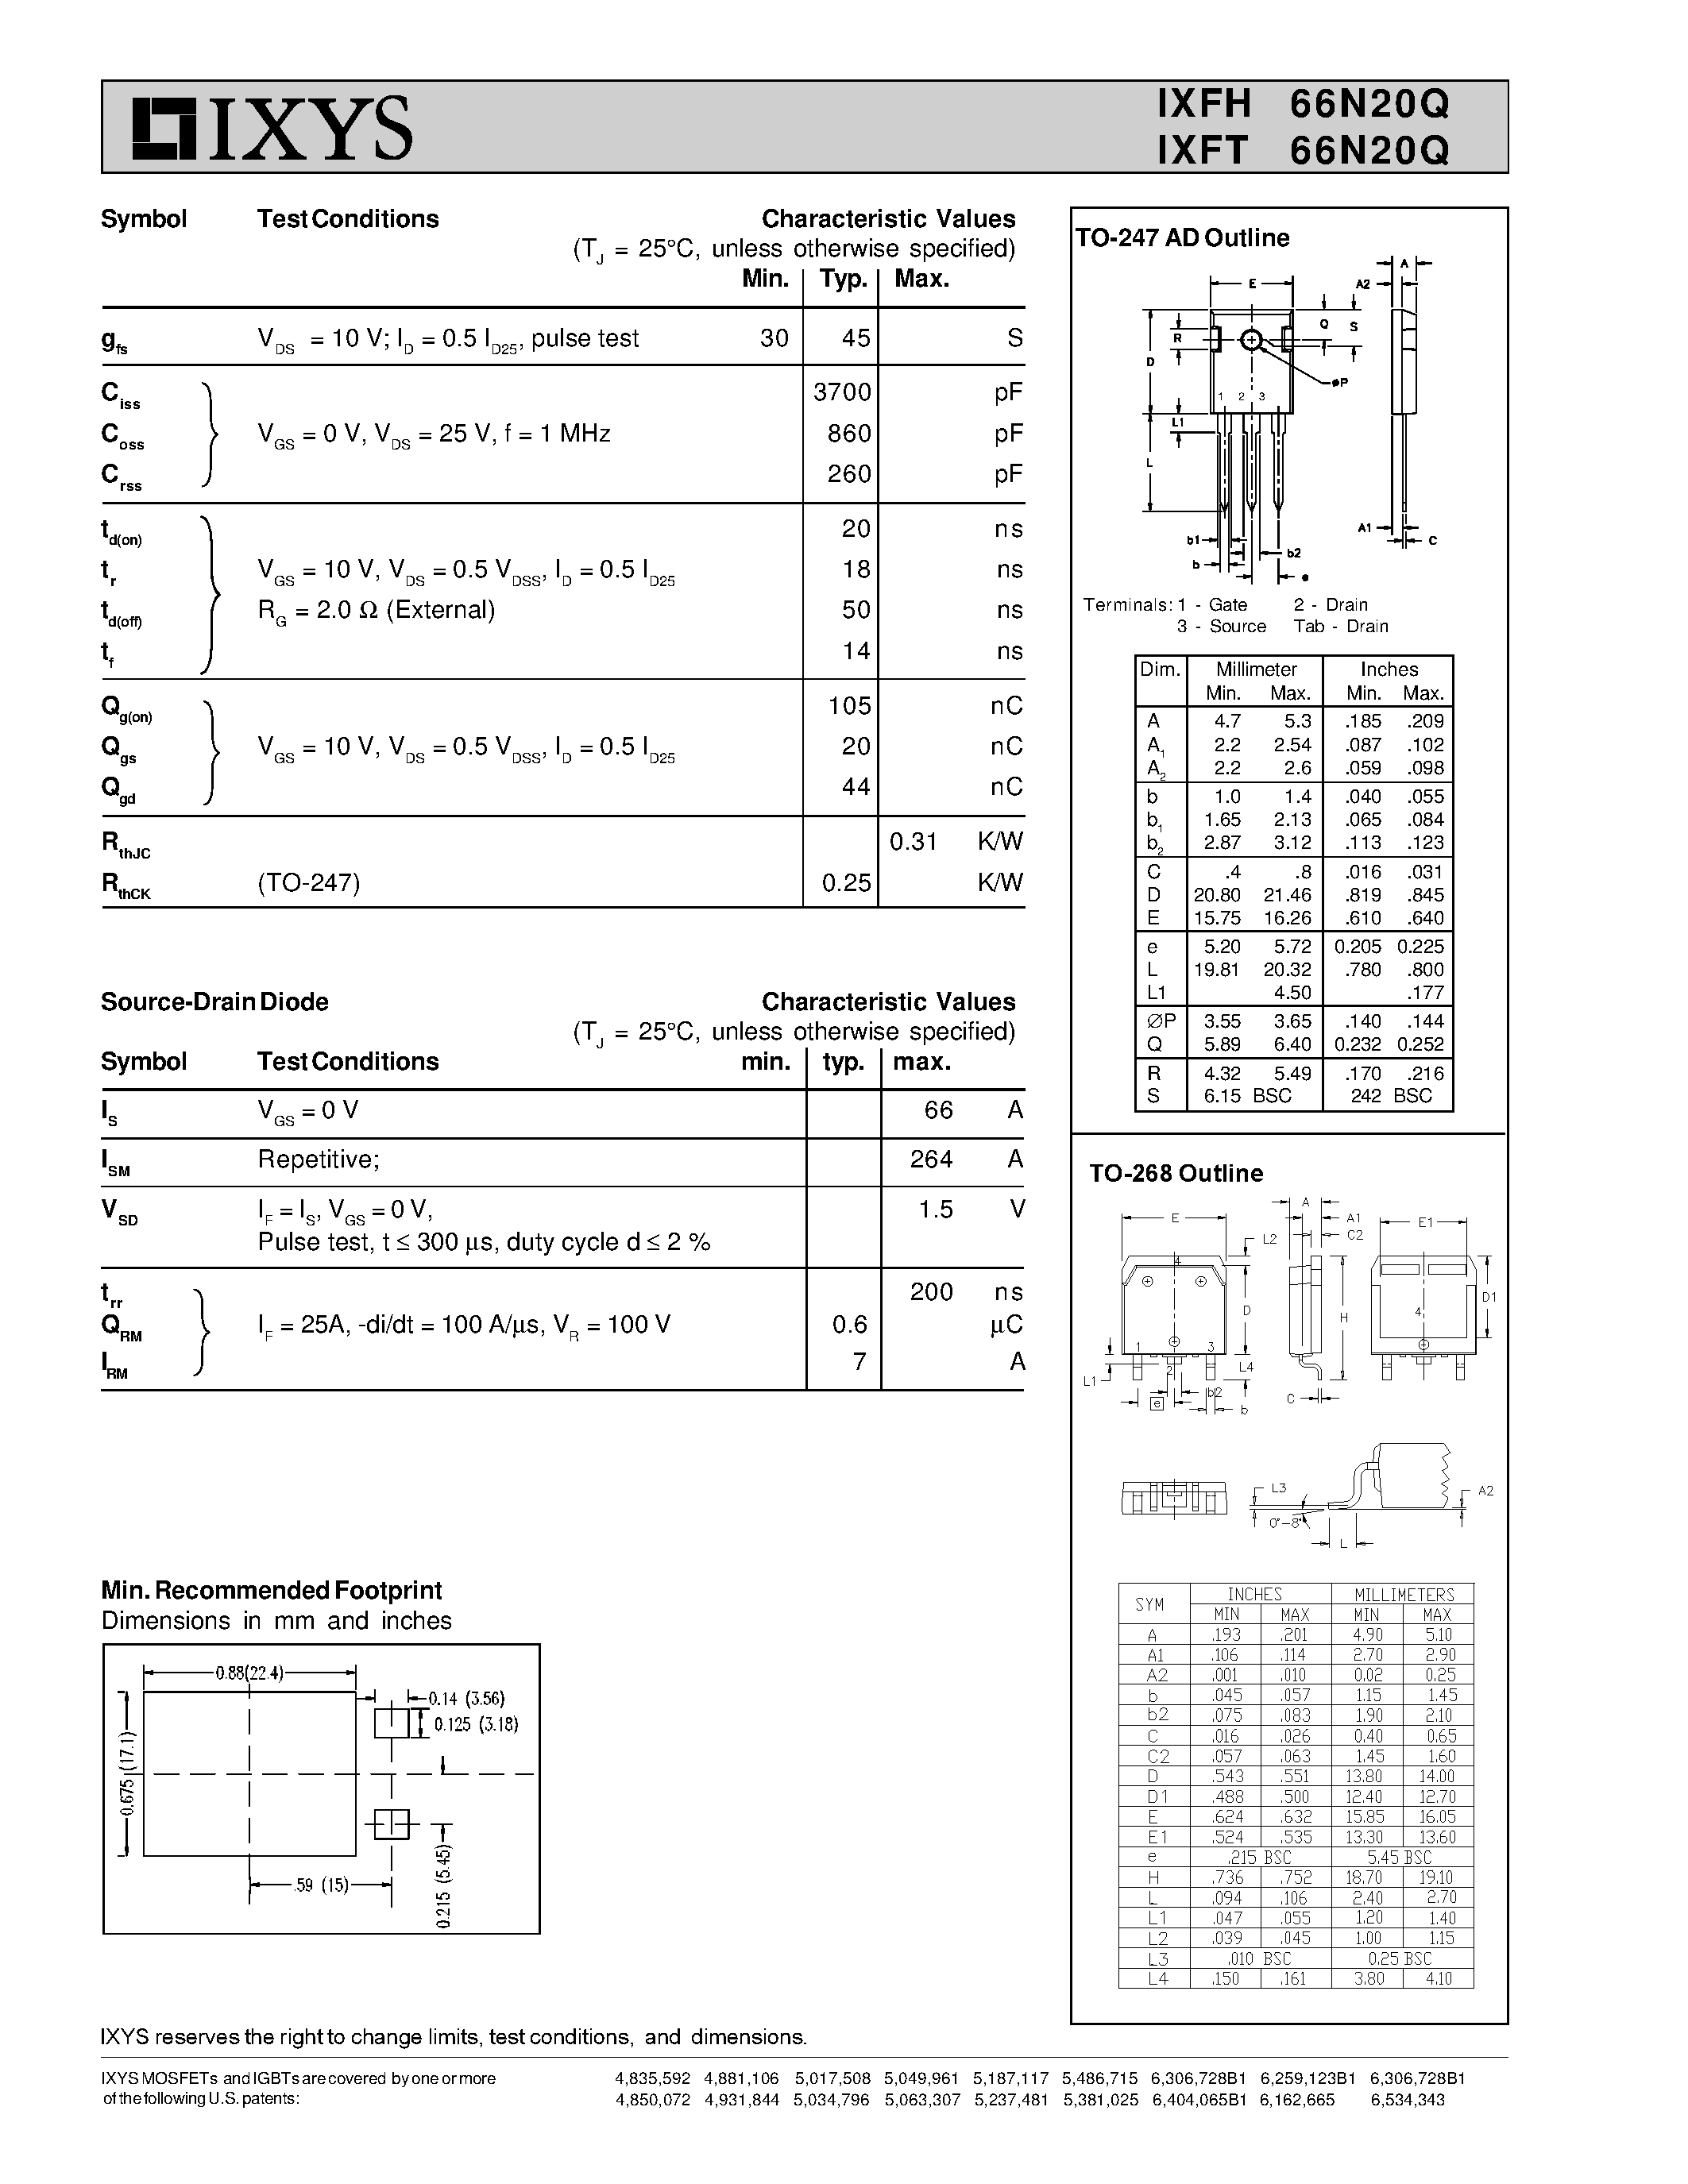 Даташит IXFT66N20Q - HiPerFET Power MOSFETs Q-Class страница 2